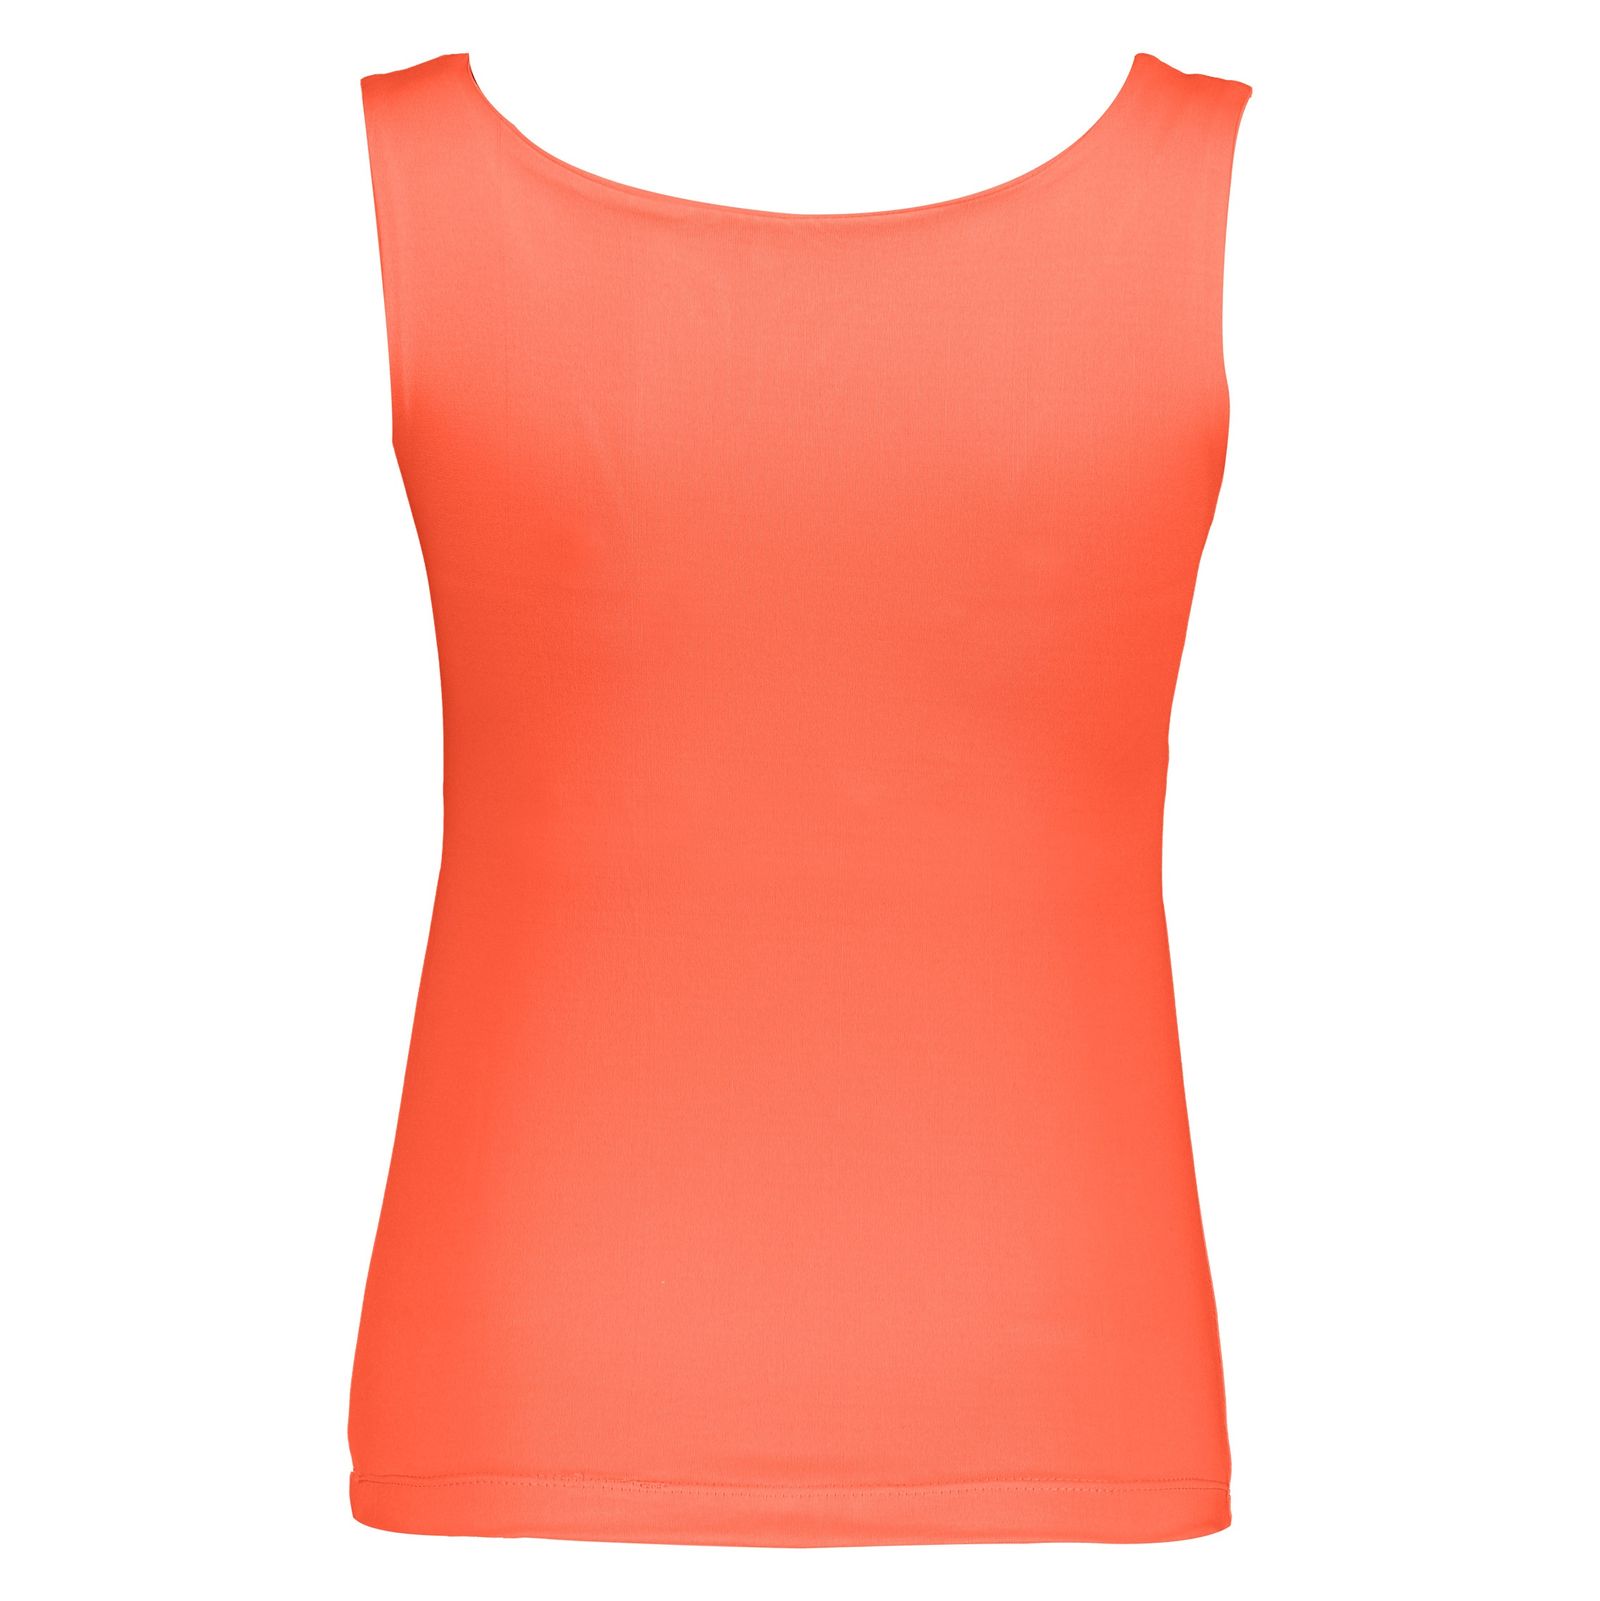 تاپ ورزشی زنانه آر ان اس مدل 2101026-23 - نارنجی - 4